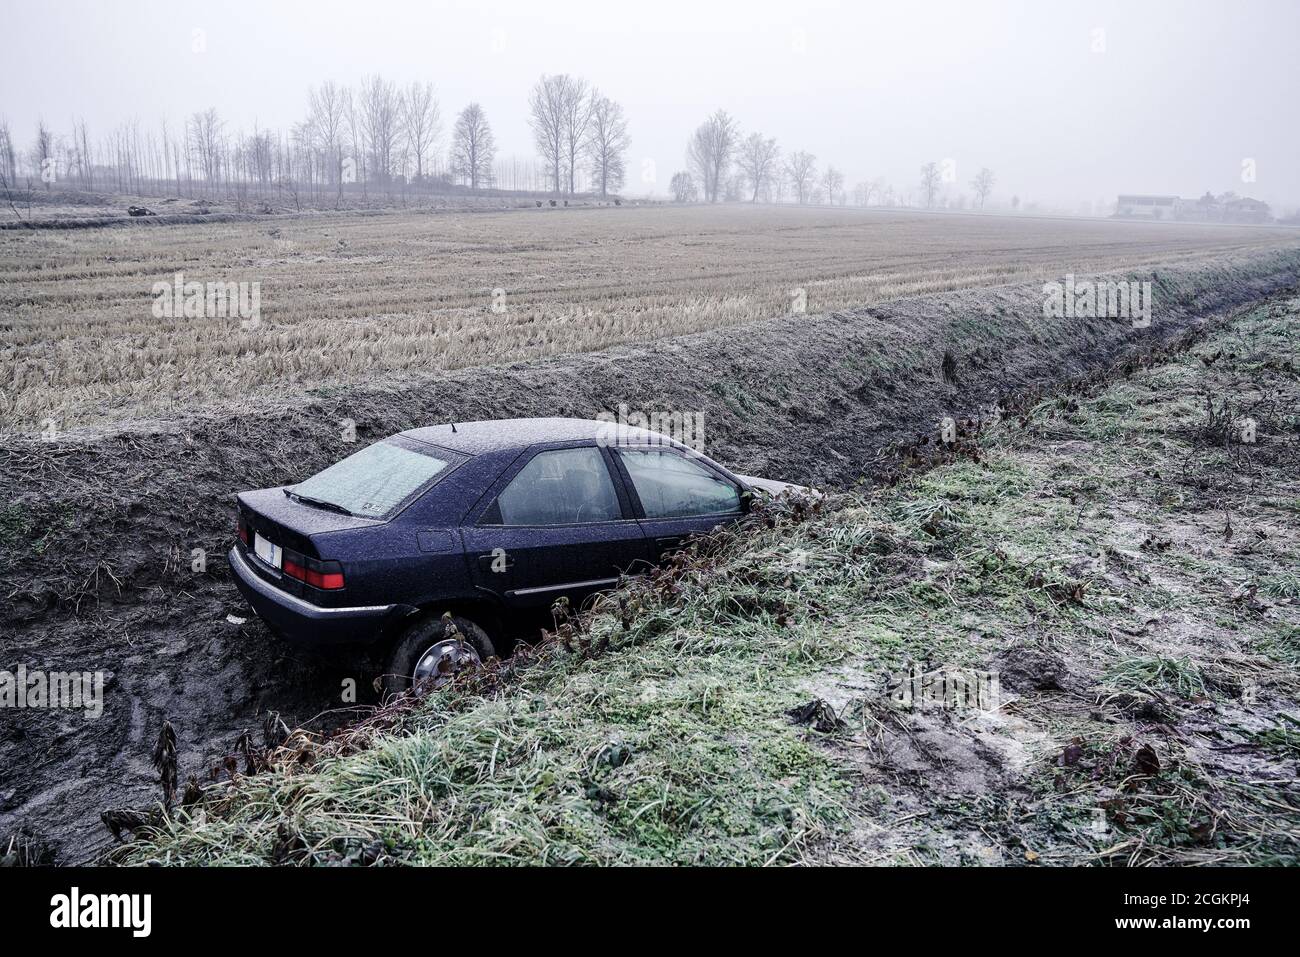 mortara - 01/13/2017 : la voiture s'est retrouvé dans un fossé à cause de la glace Banque D'Images